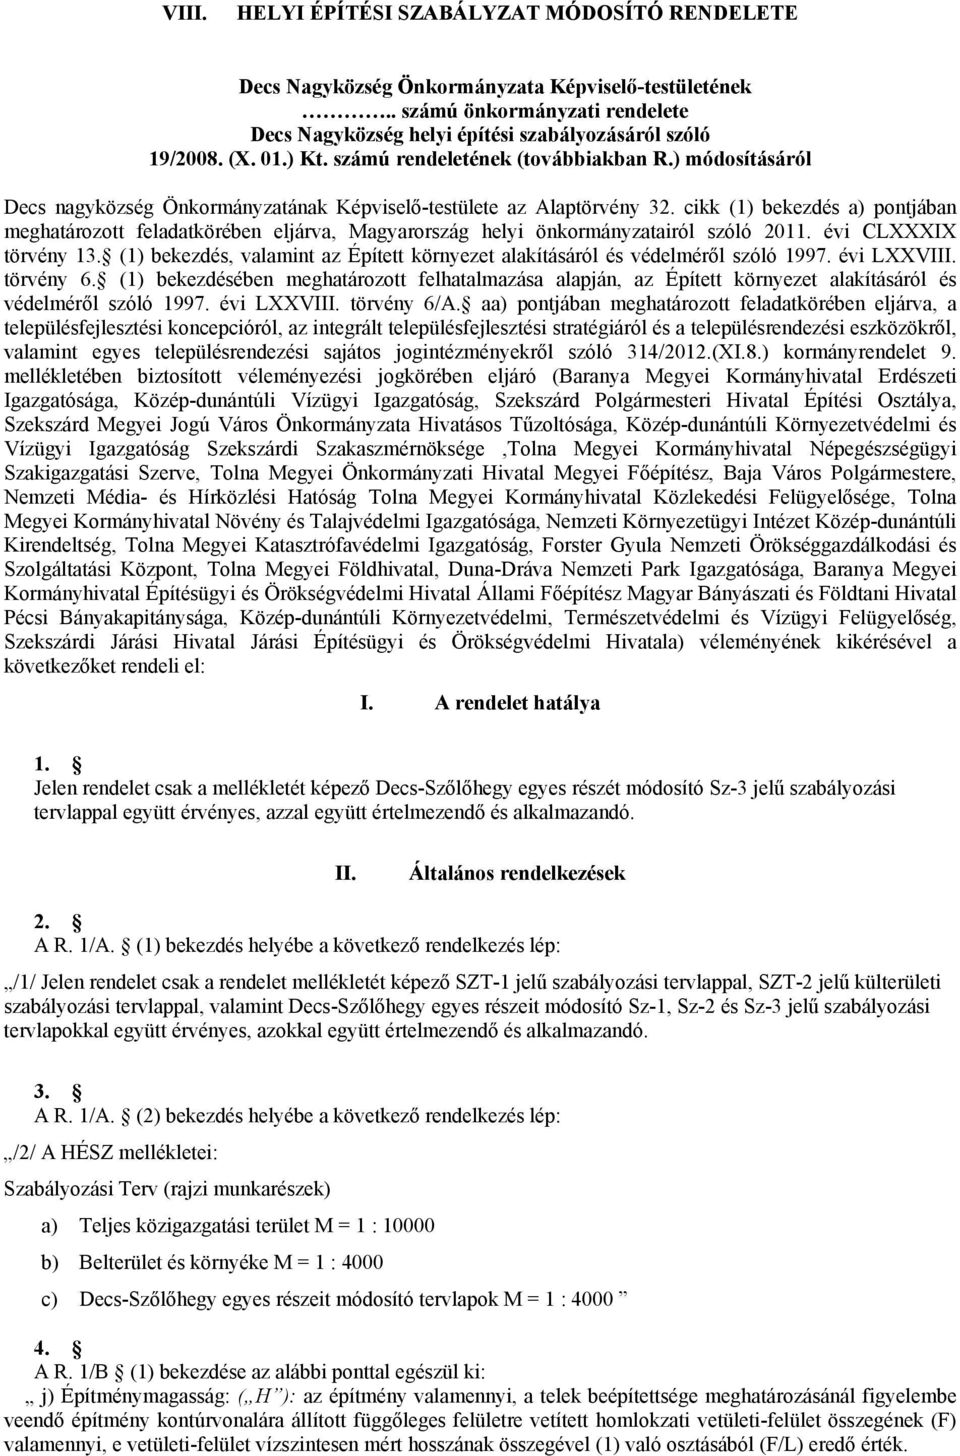 cikk (1) bekezdés a) pontjában meghatározott feladatkörében eljárva, Magyarország helyi önkormányzatairól szóló 2011. évi CLXXXIX törvény 13.